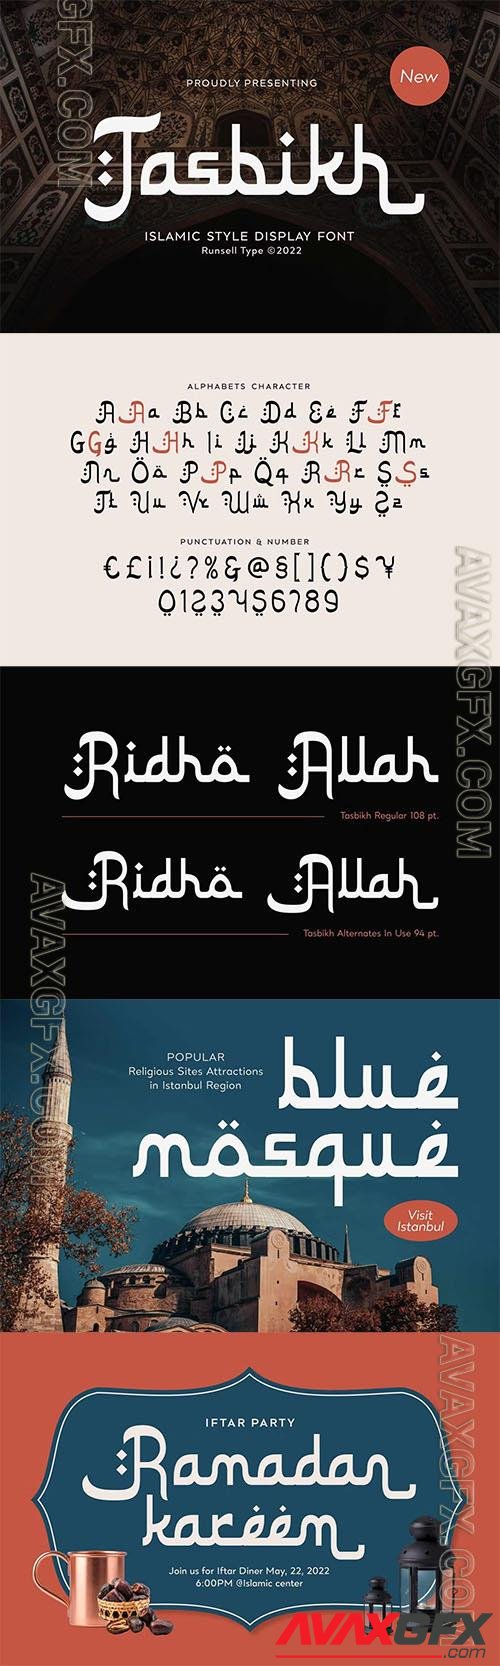 Arabic Font - Tasbikh KX3M7SS